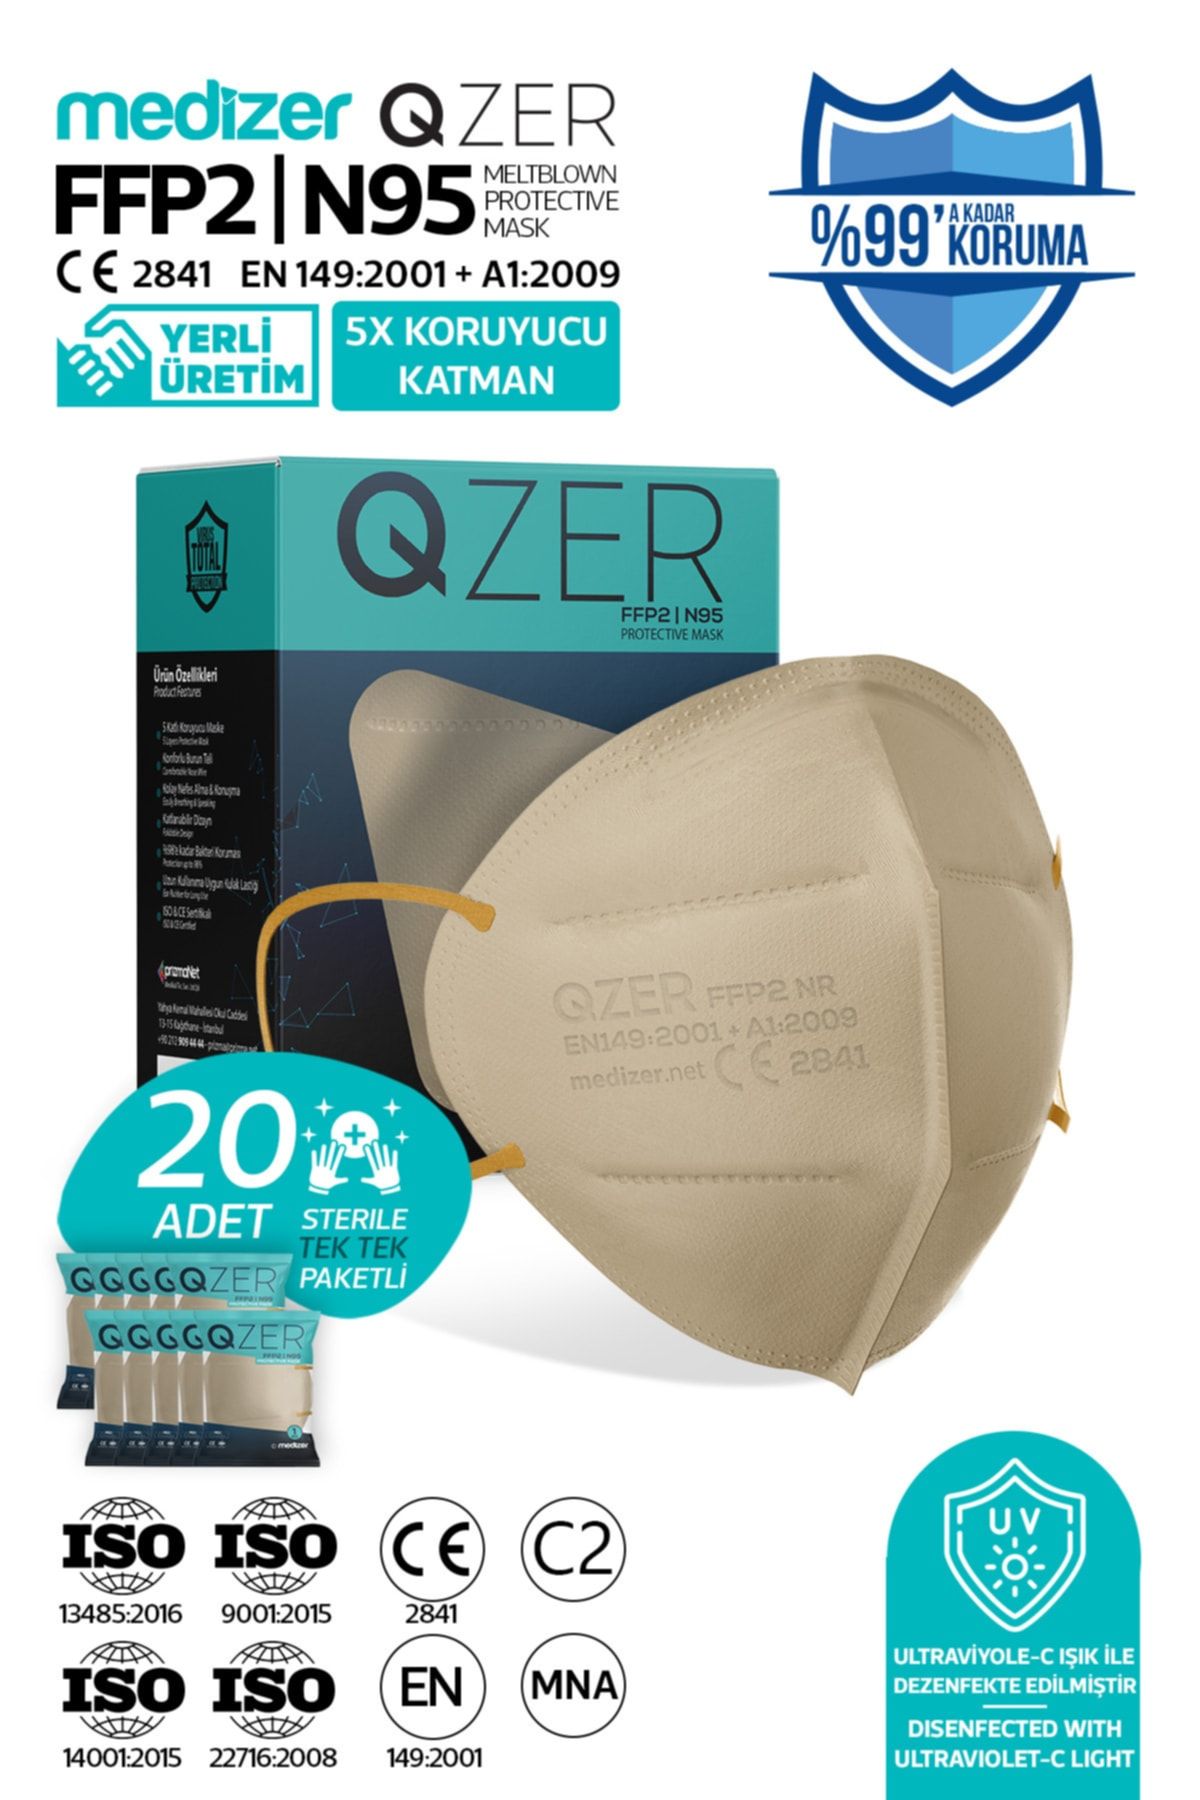 Medizer Qzer 20 Adet Krem Renk 5 Katmanlı Ffp2 Maske